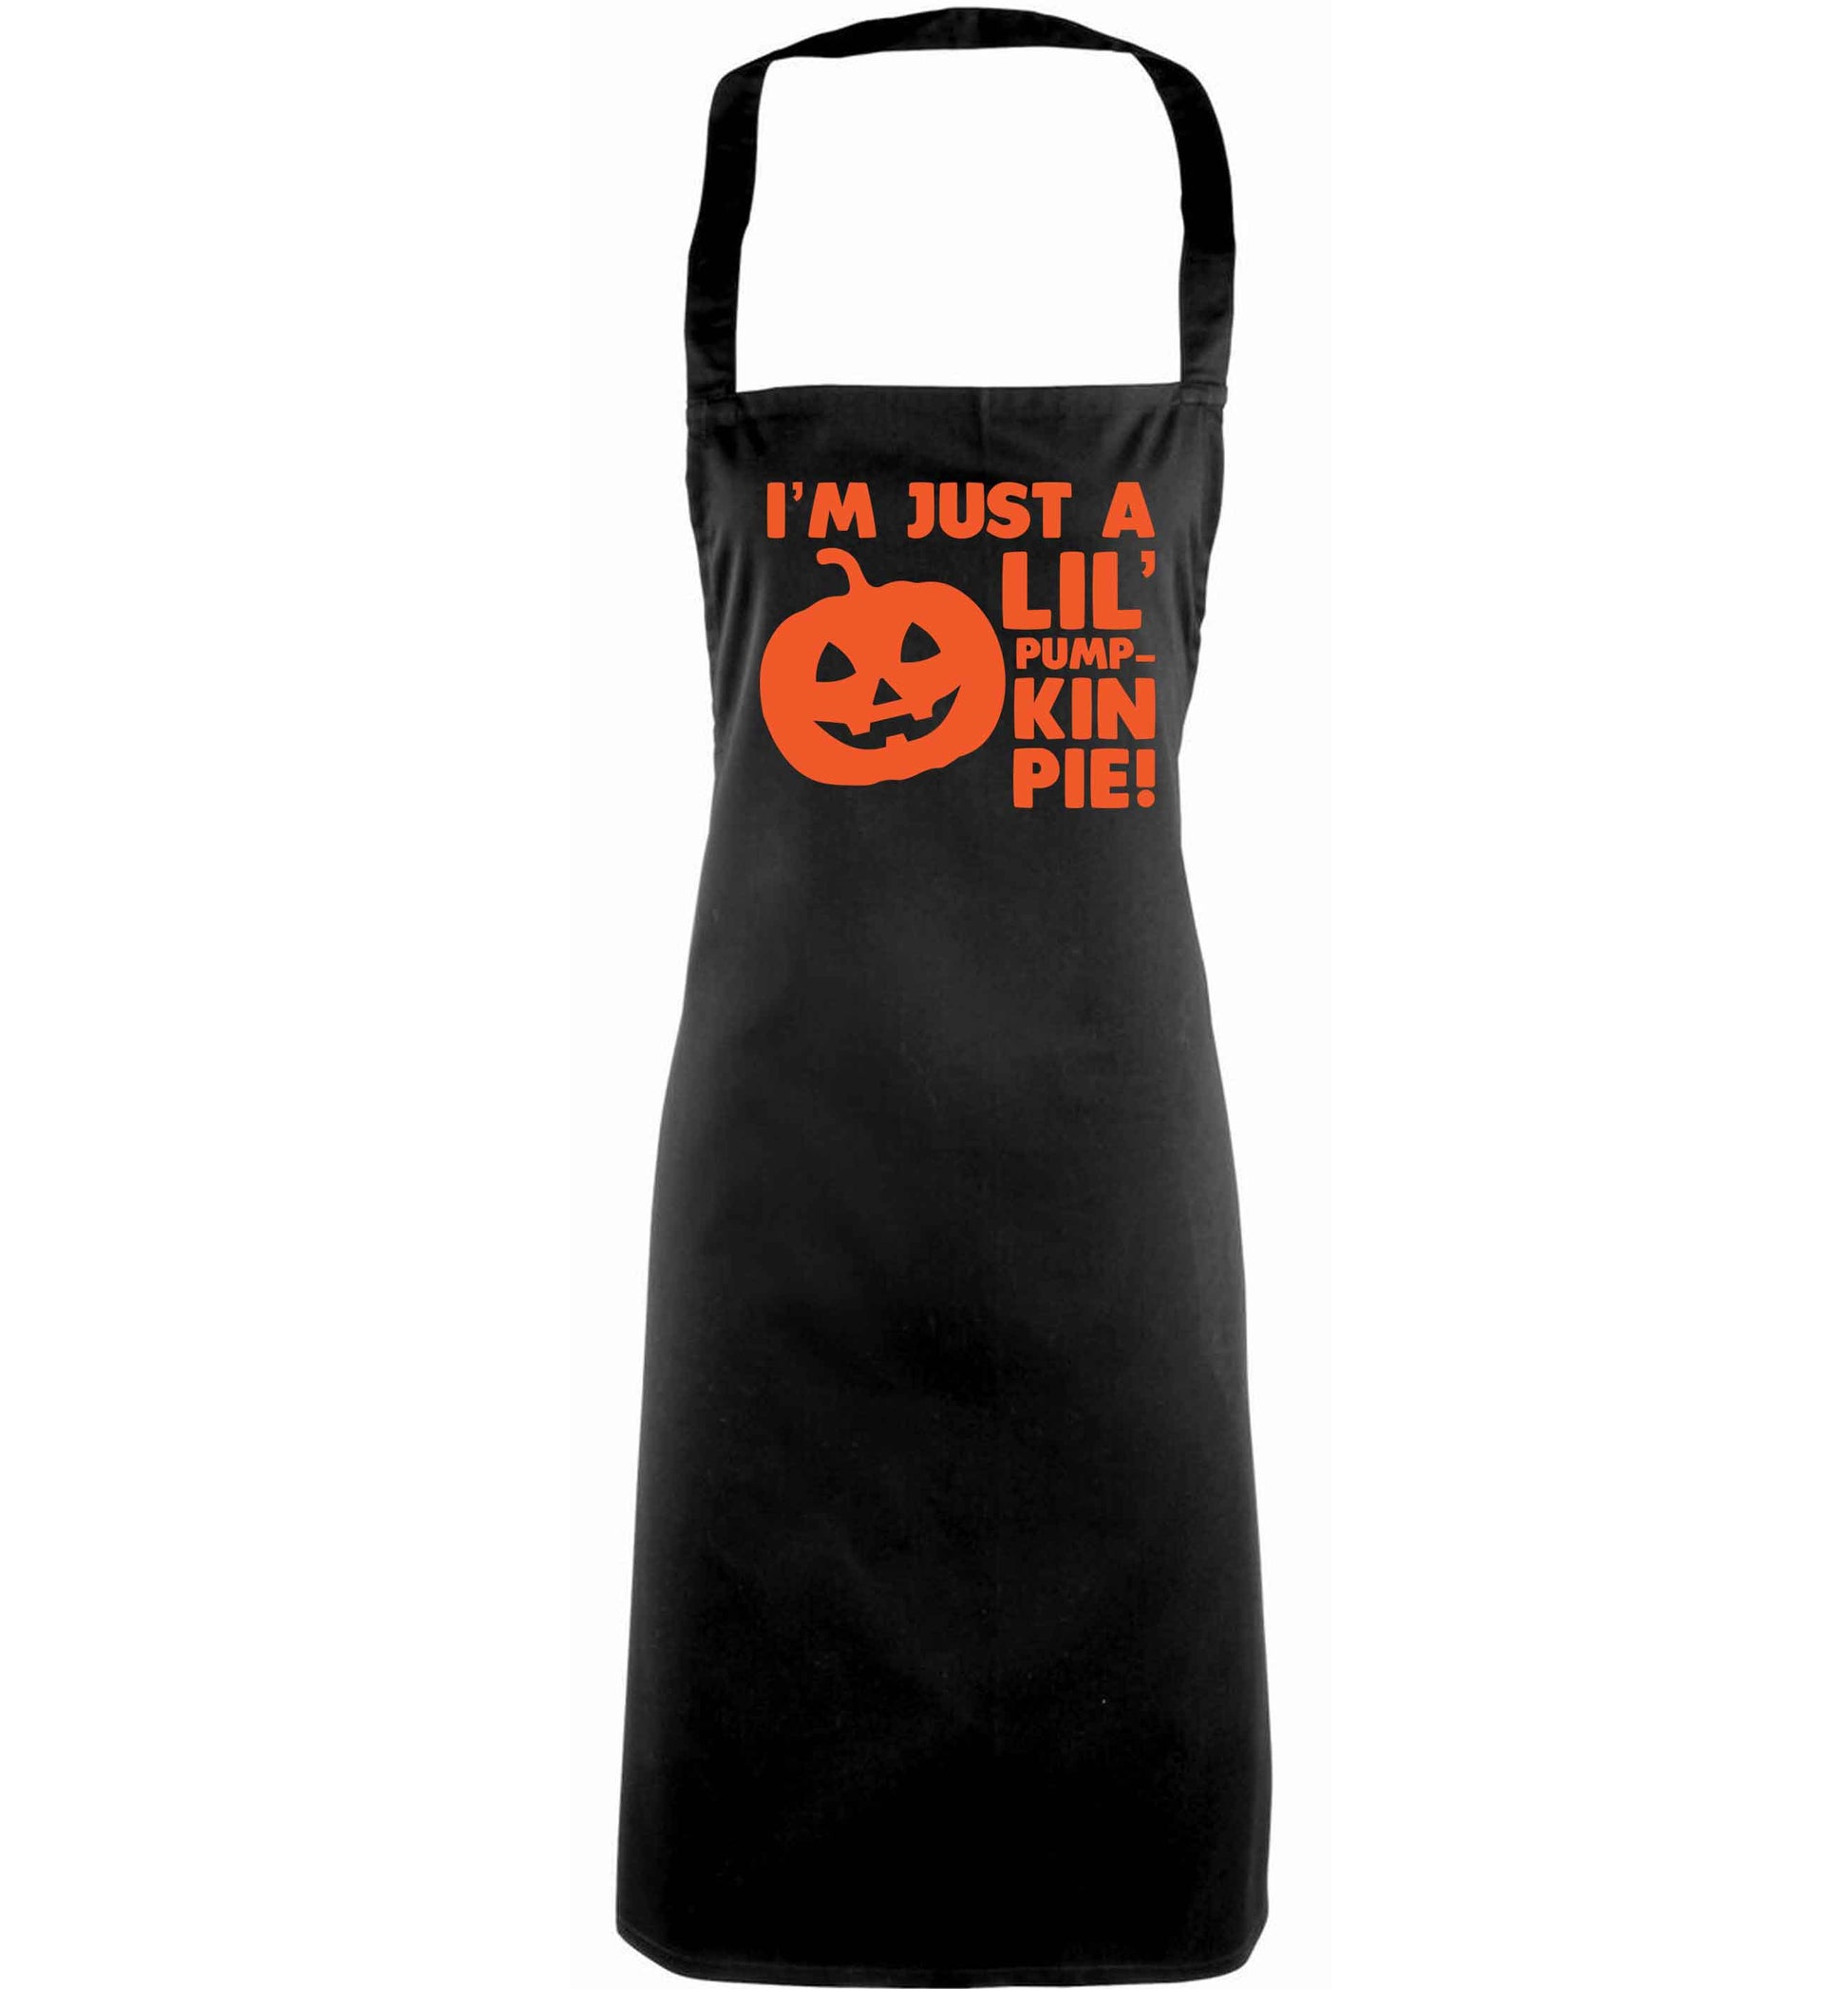 I'm just a lil' pumpkin pie adults black apron